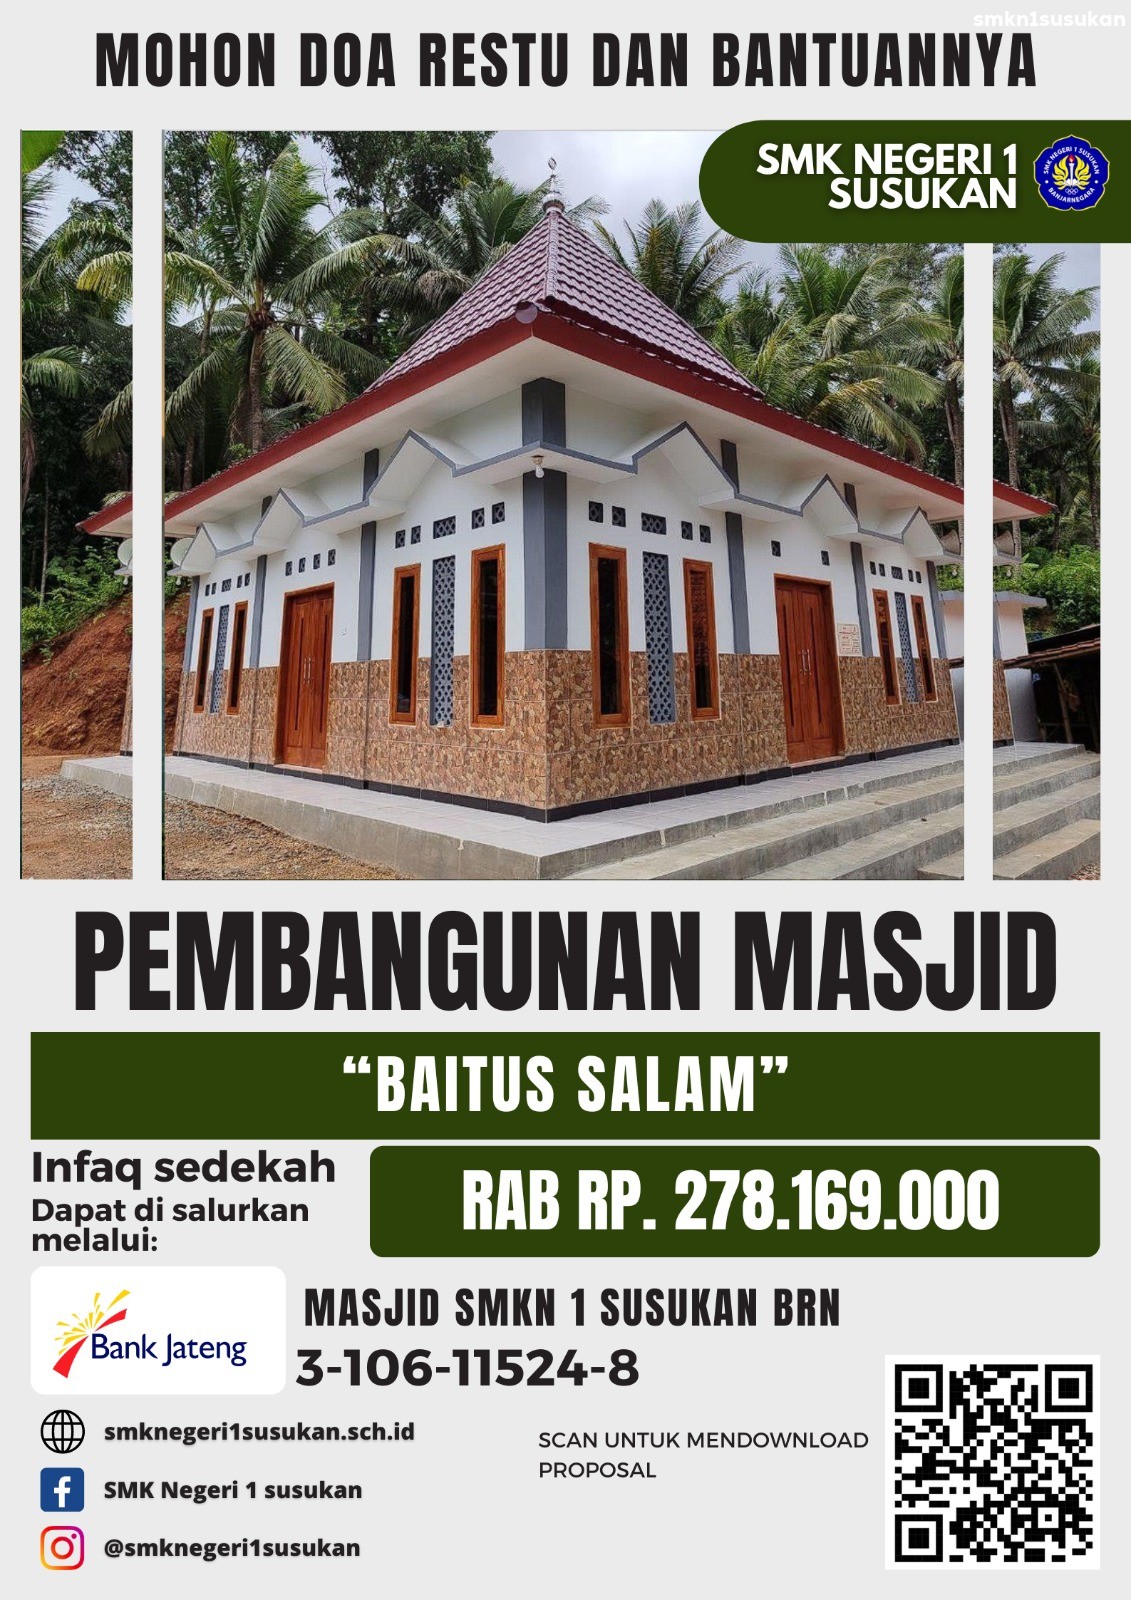 Pembangunan Masjid Baitus salam SMK Negeri 1 Susukan 